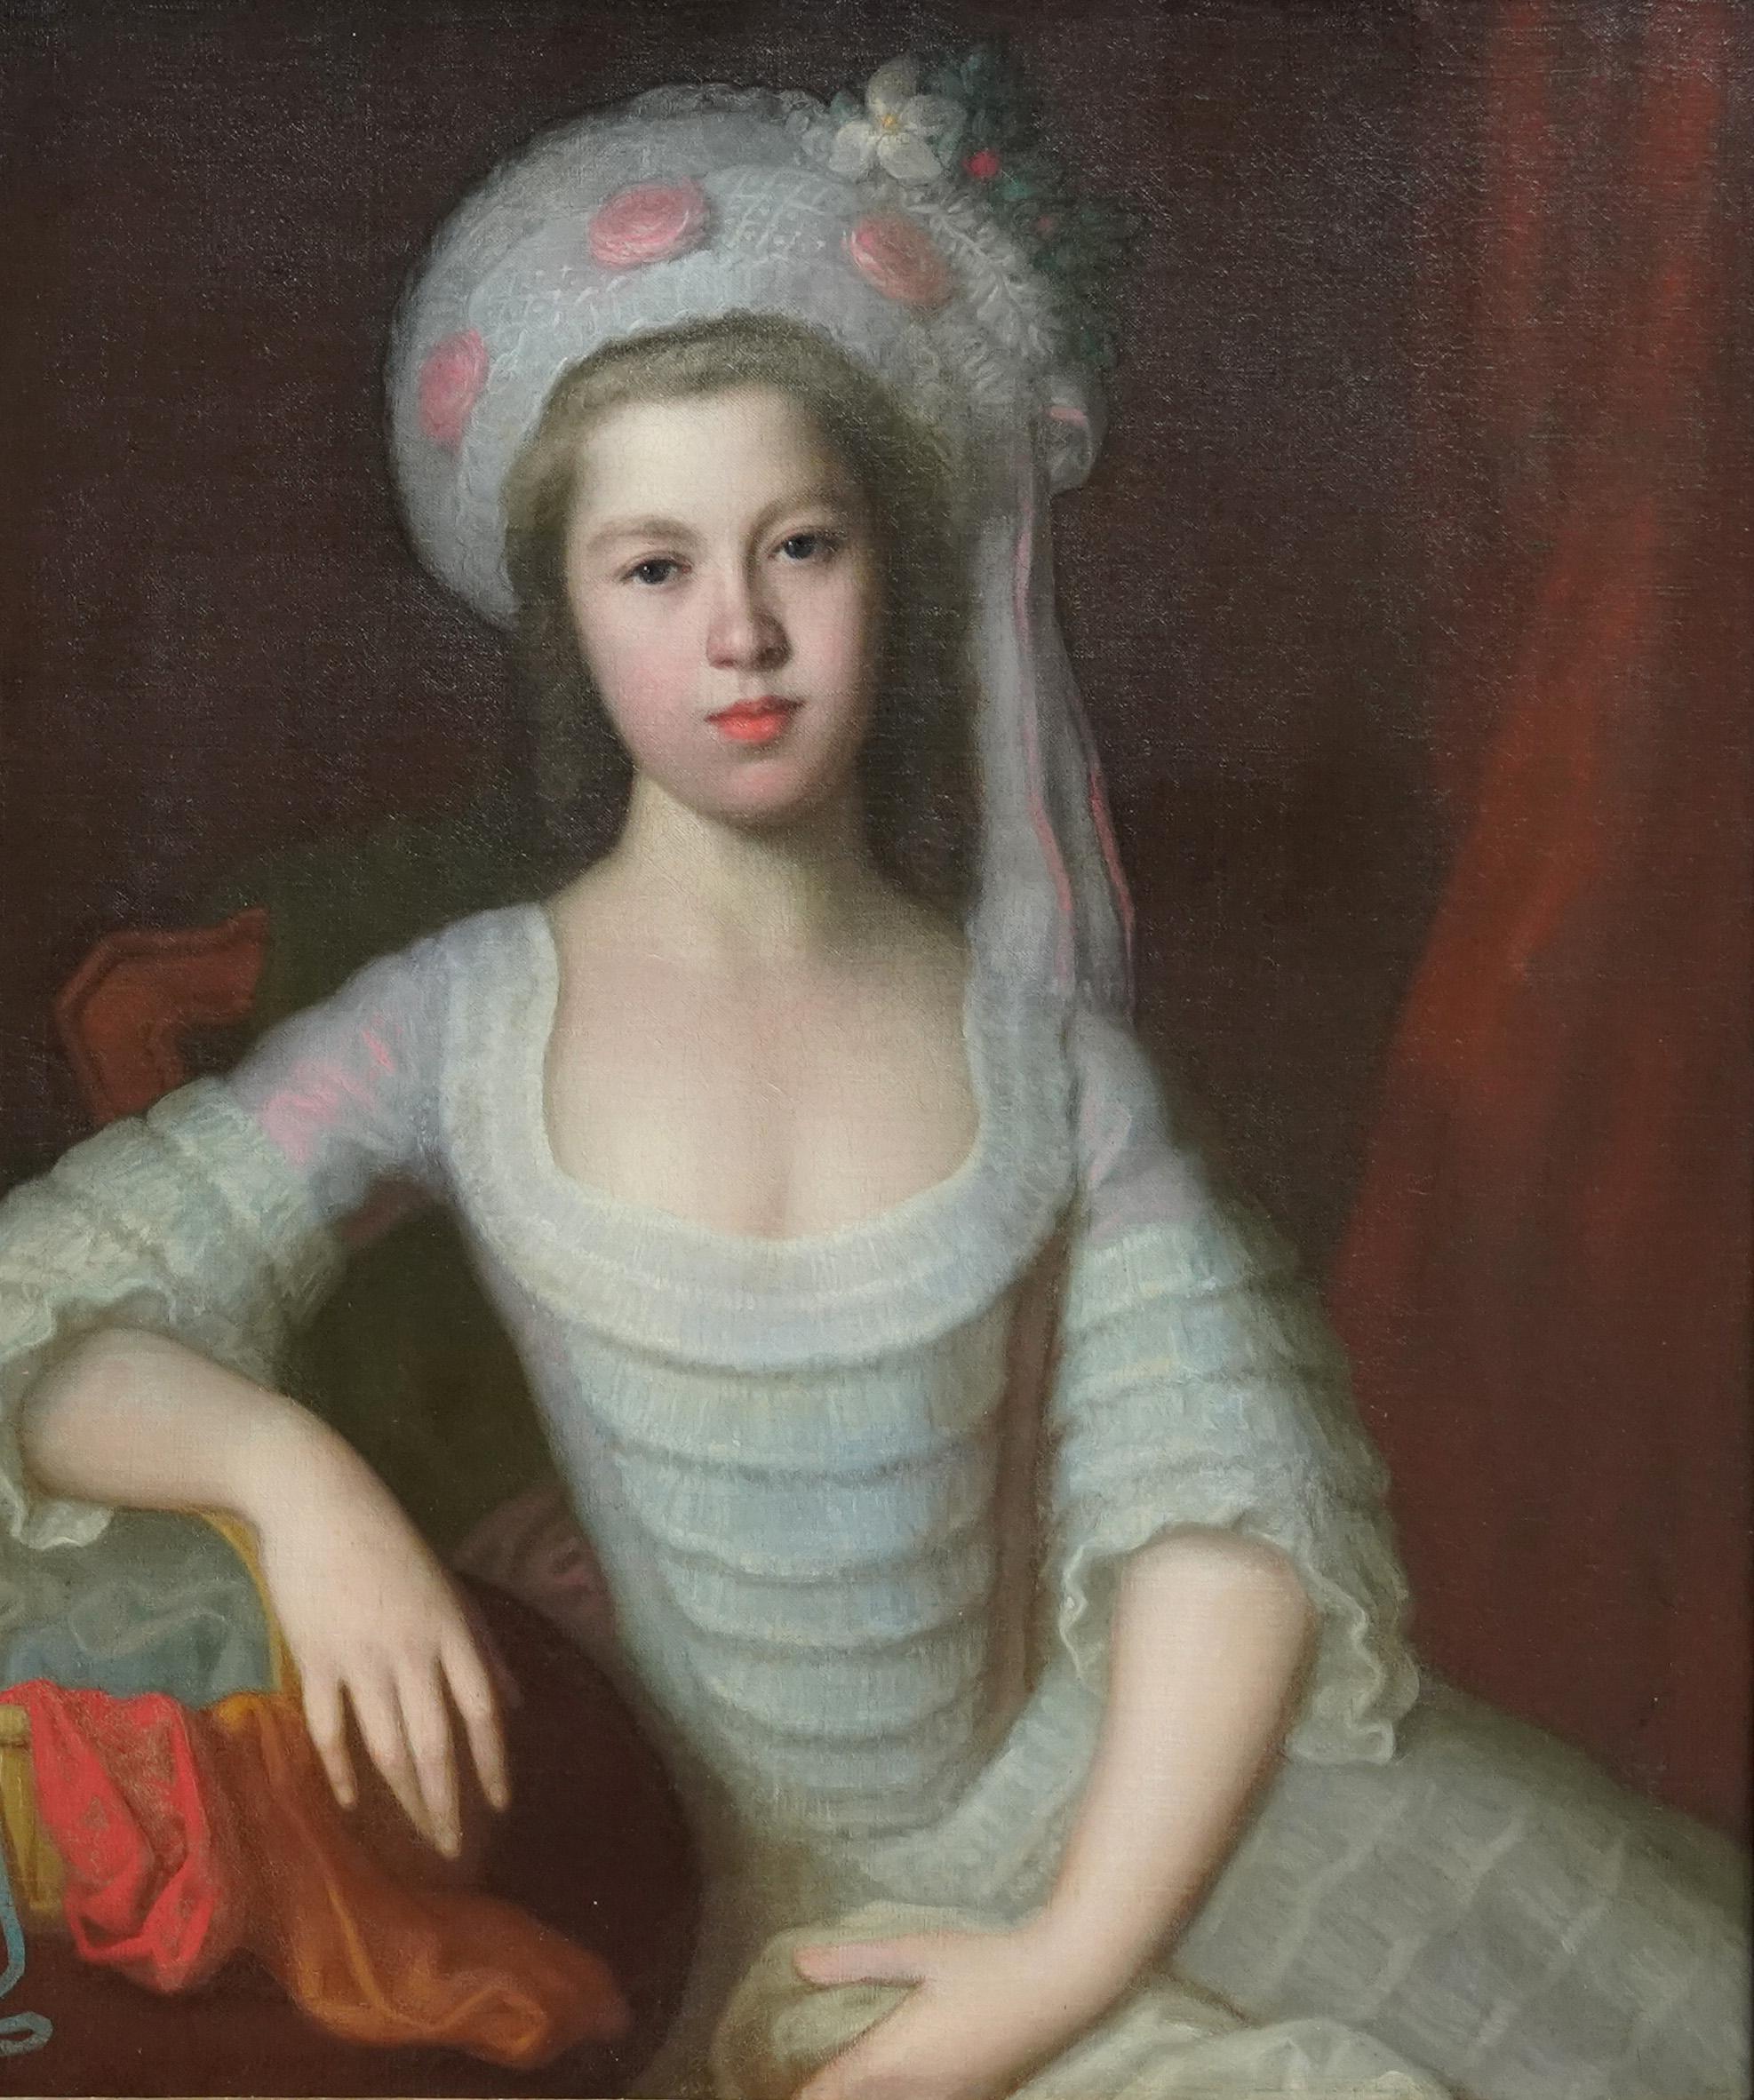 Porträt von Silvestra Monypenny – britisches Ölgemälde einer weiblichen Figur aus dem 18. Jahrhundert – Painting von Thomas Beach